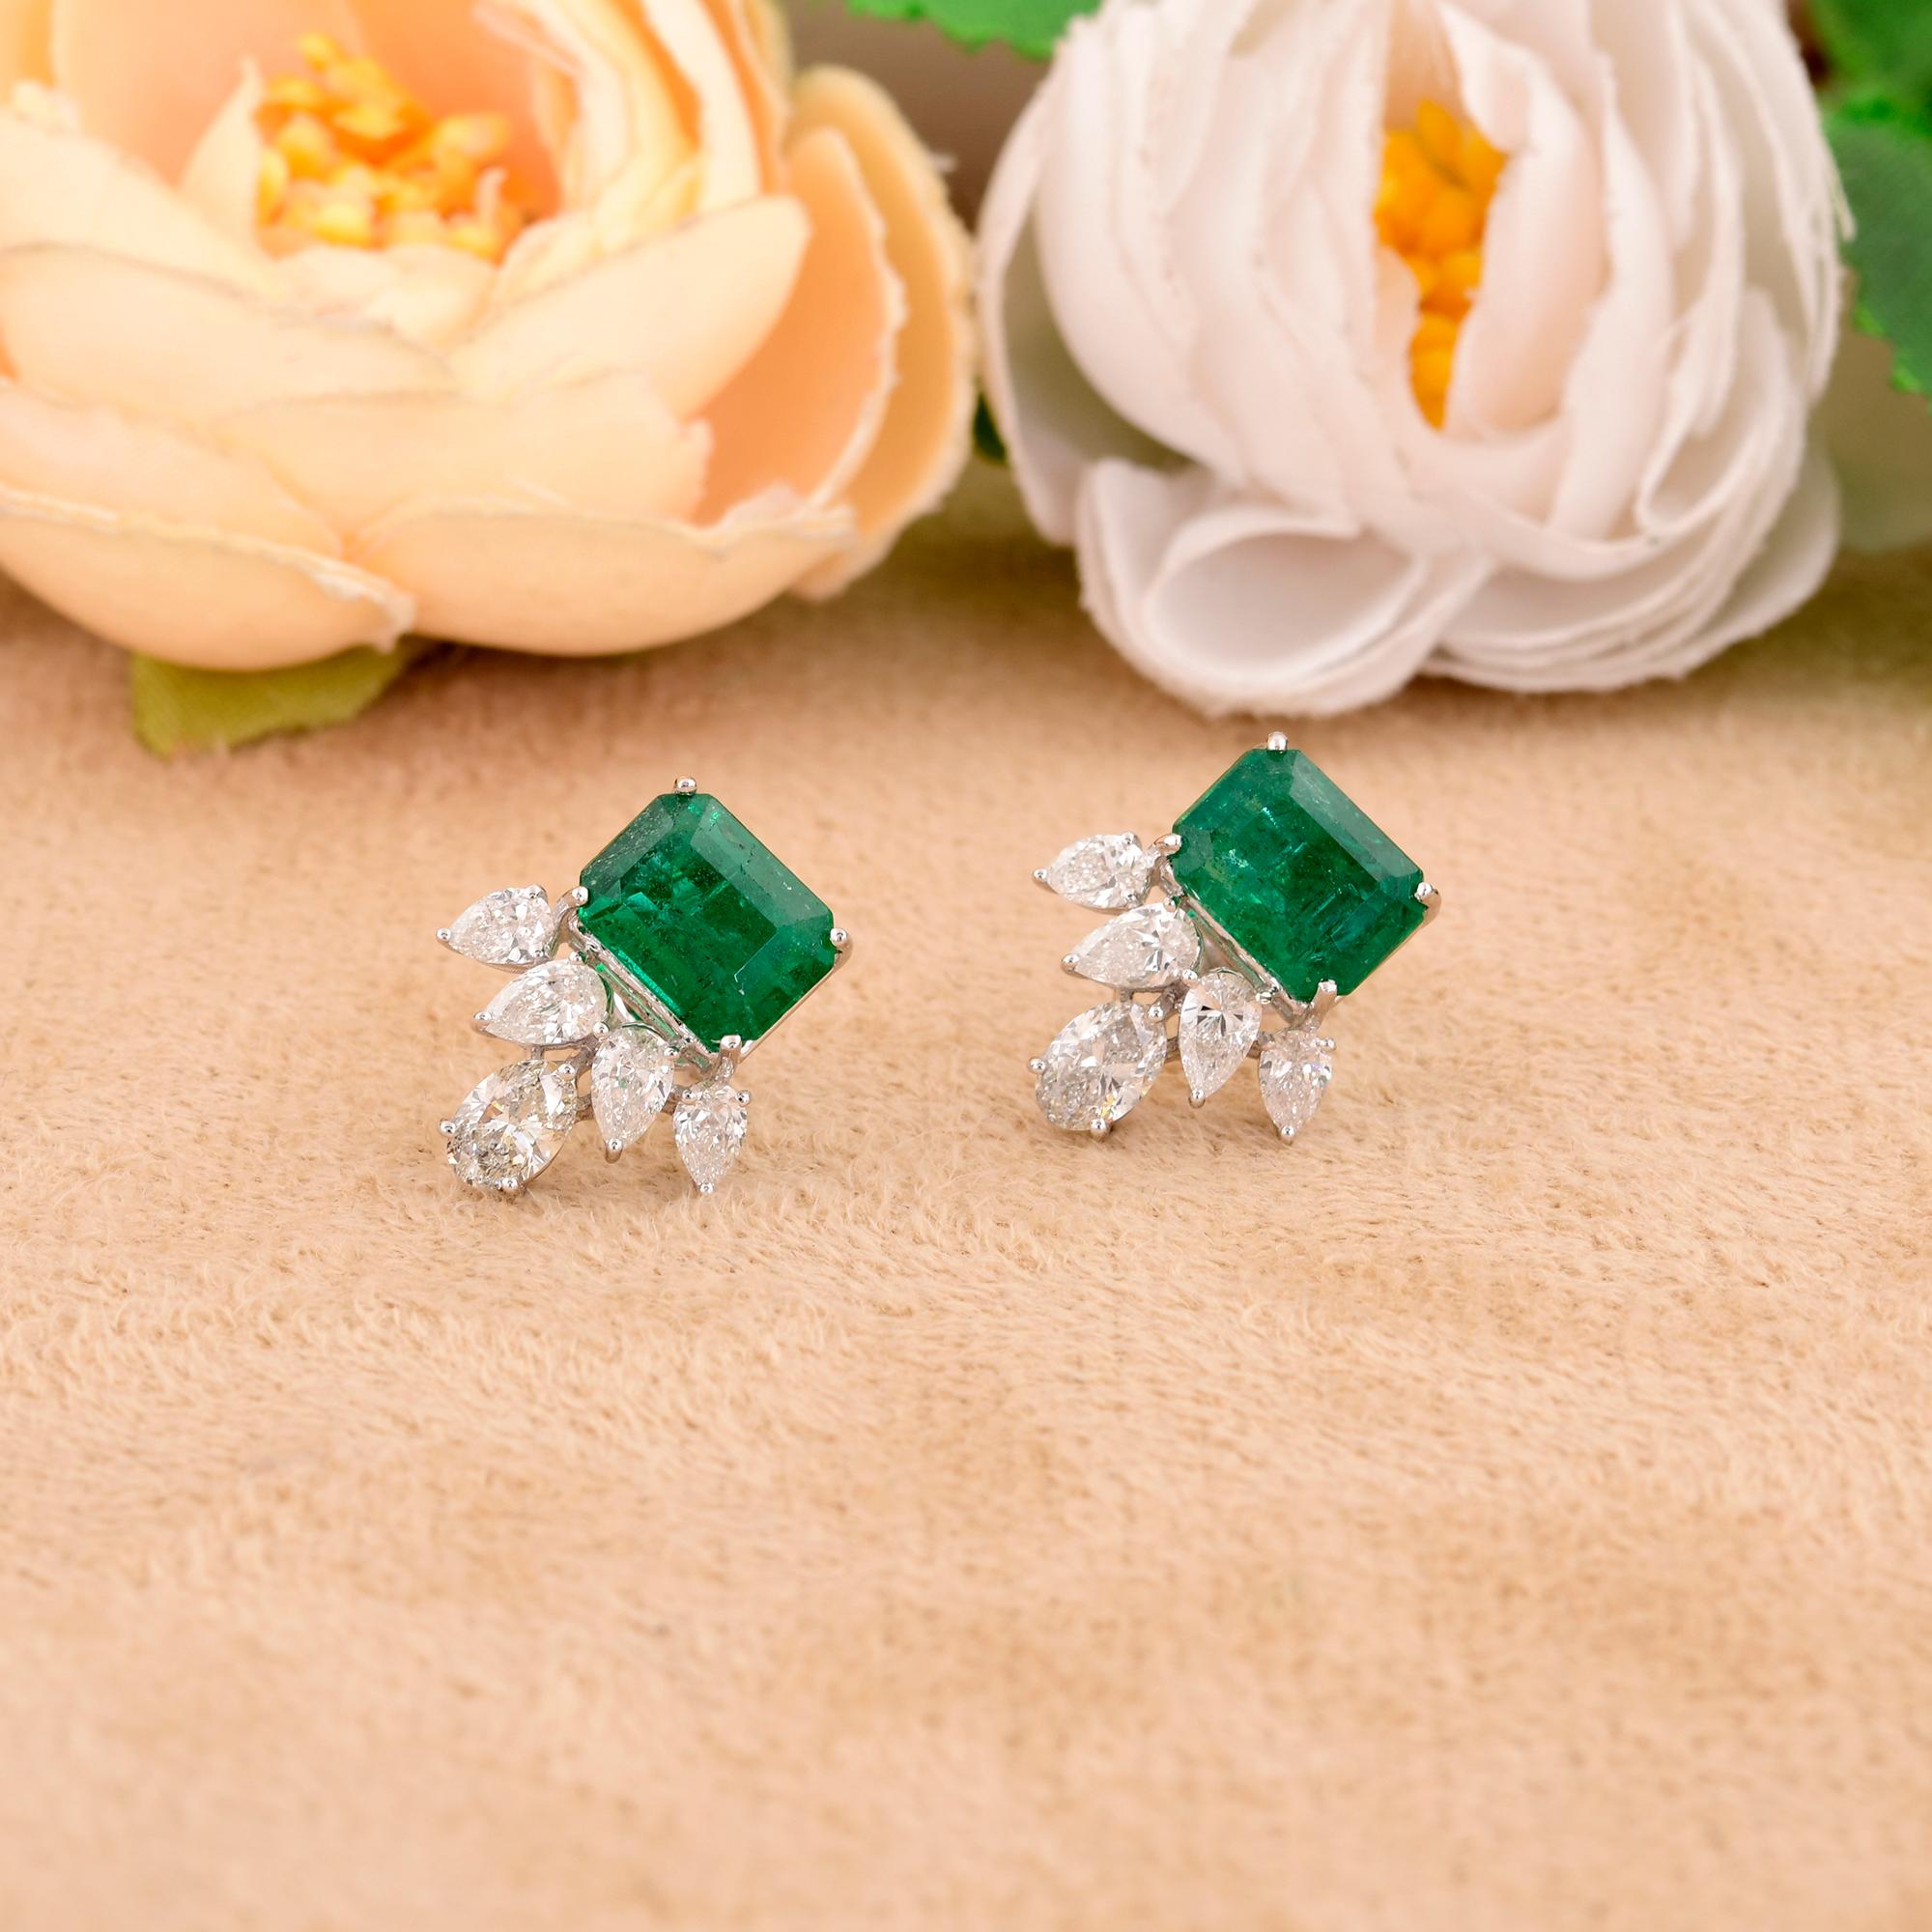 Oval Cut Zambian Emerald Gemstone Stud Earrings Pear & Oval Diamond 18 Karat White Gold For Sale